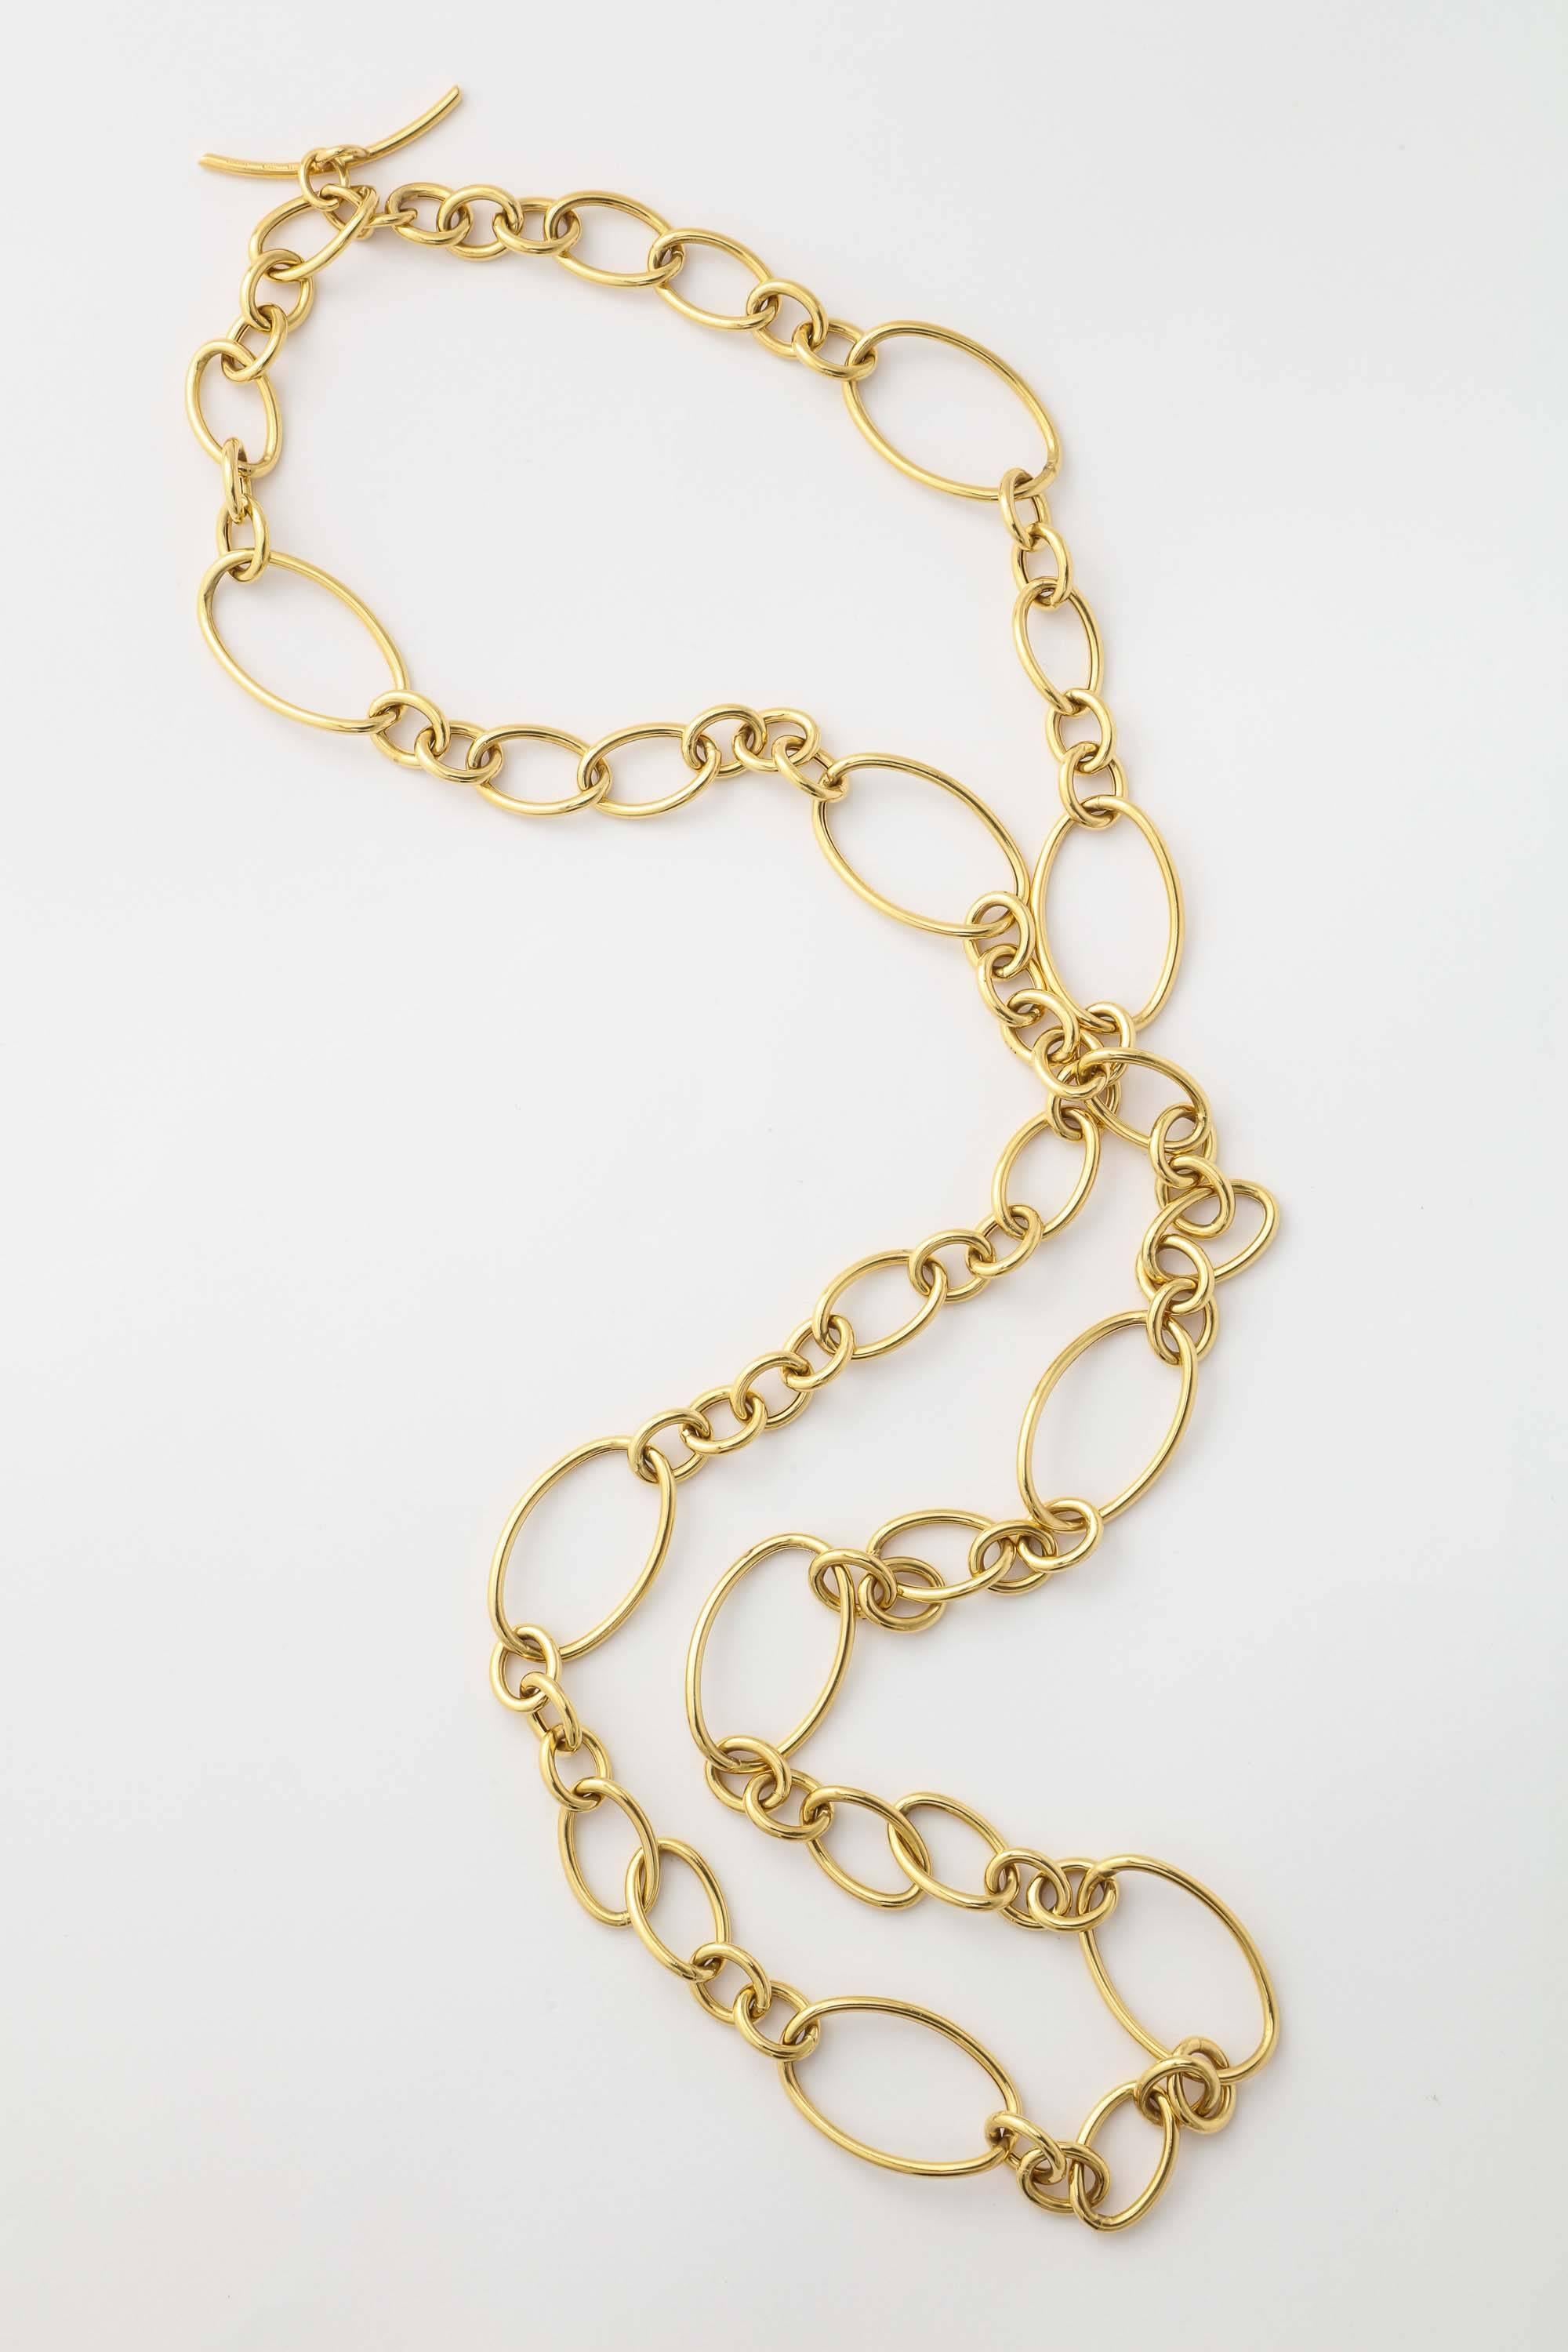 Contemporary Faraone Mennella gold necklace